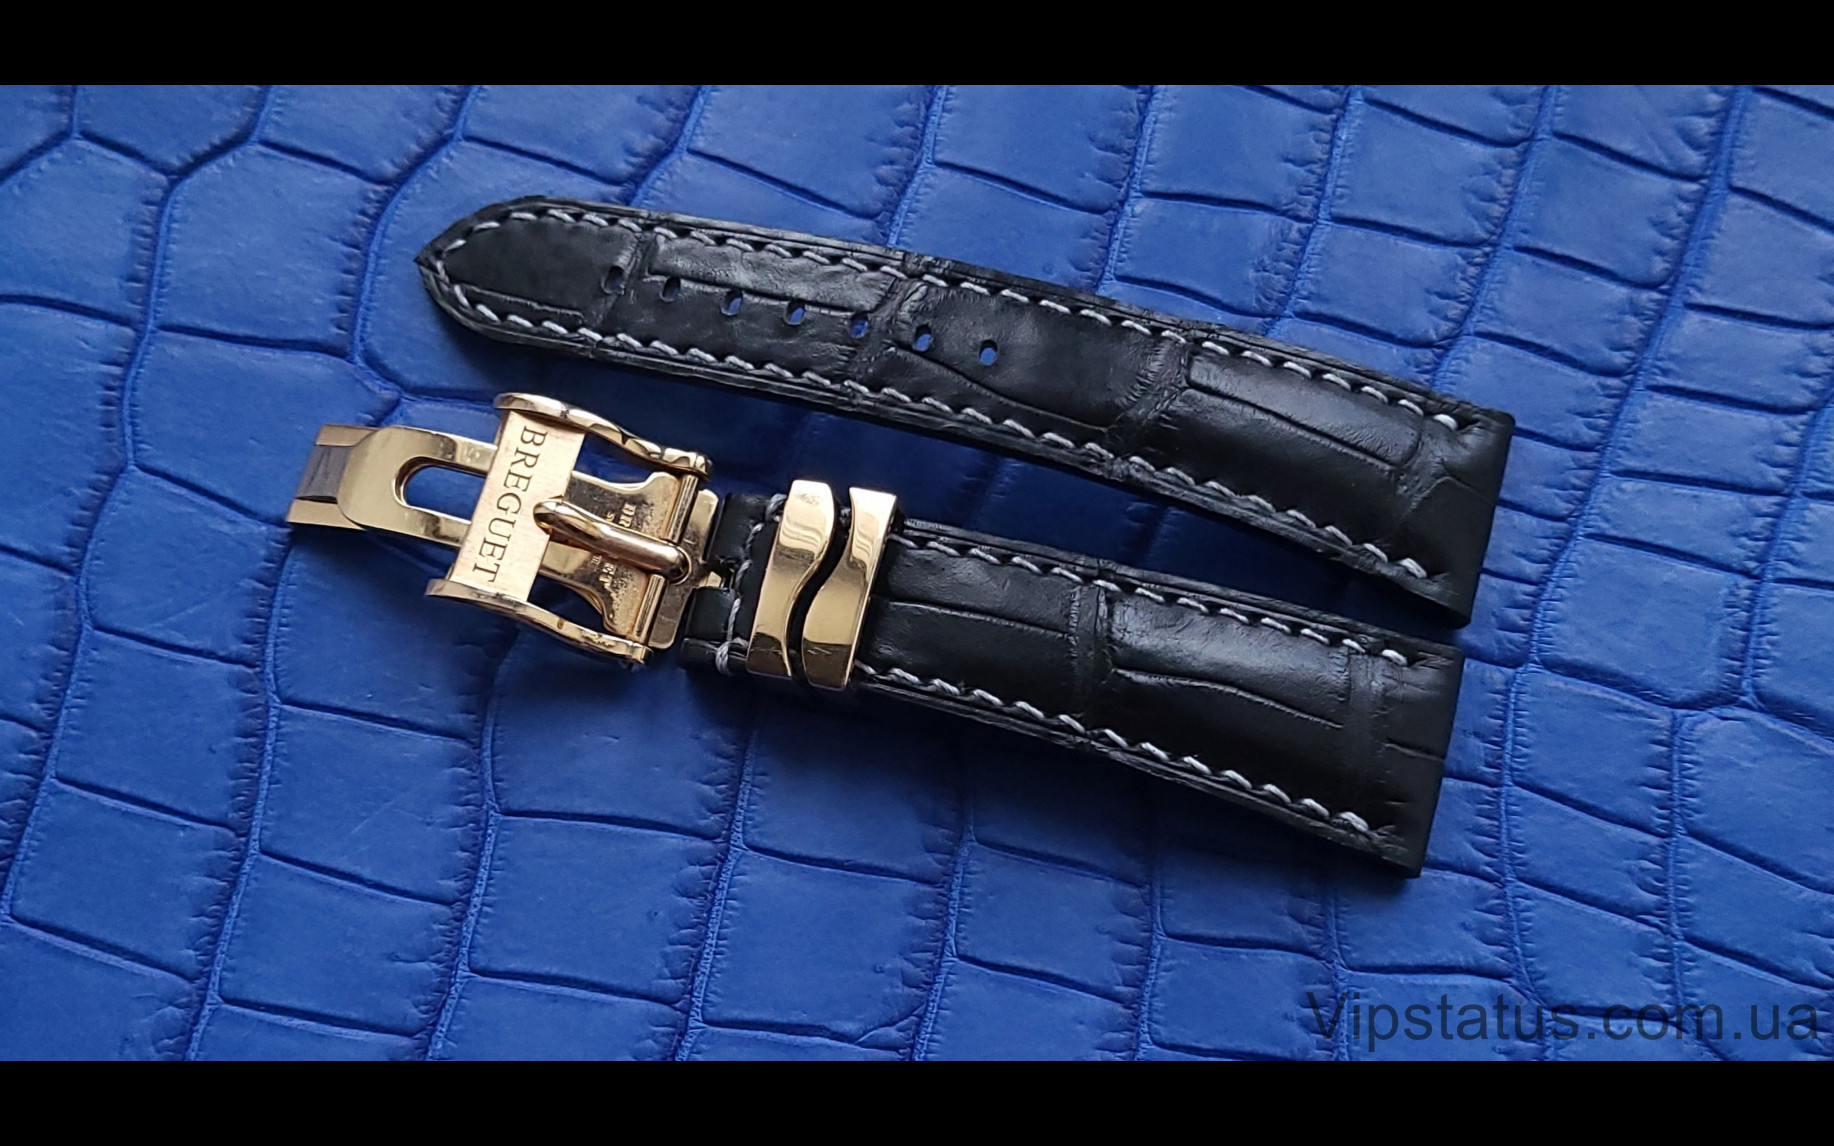 Elite Шикарный ремешок для часов Breguet кожа крокодила Chic Crocodile Strap for Breguet watches image 3